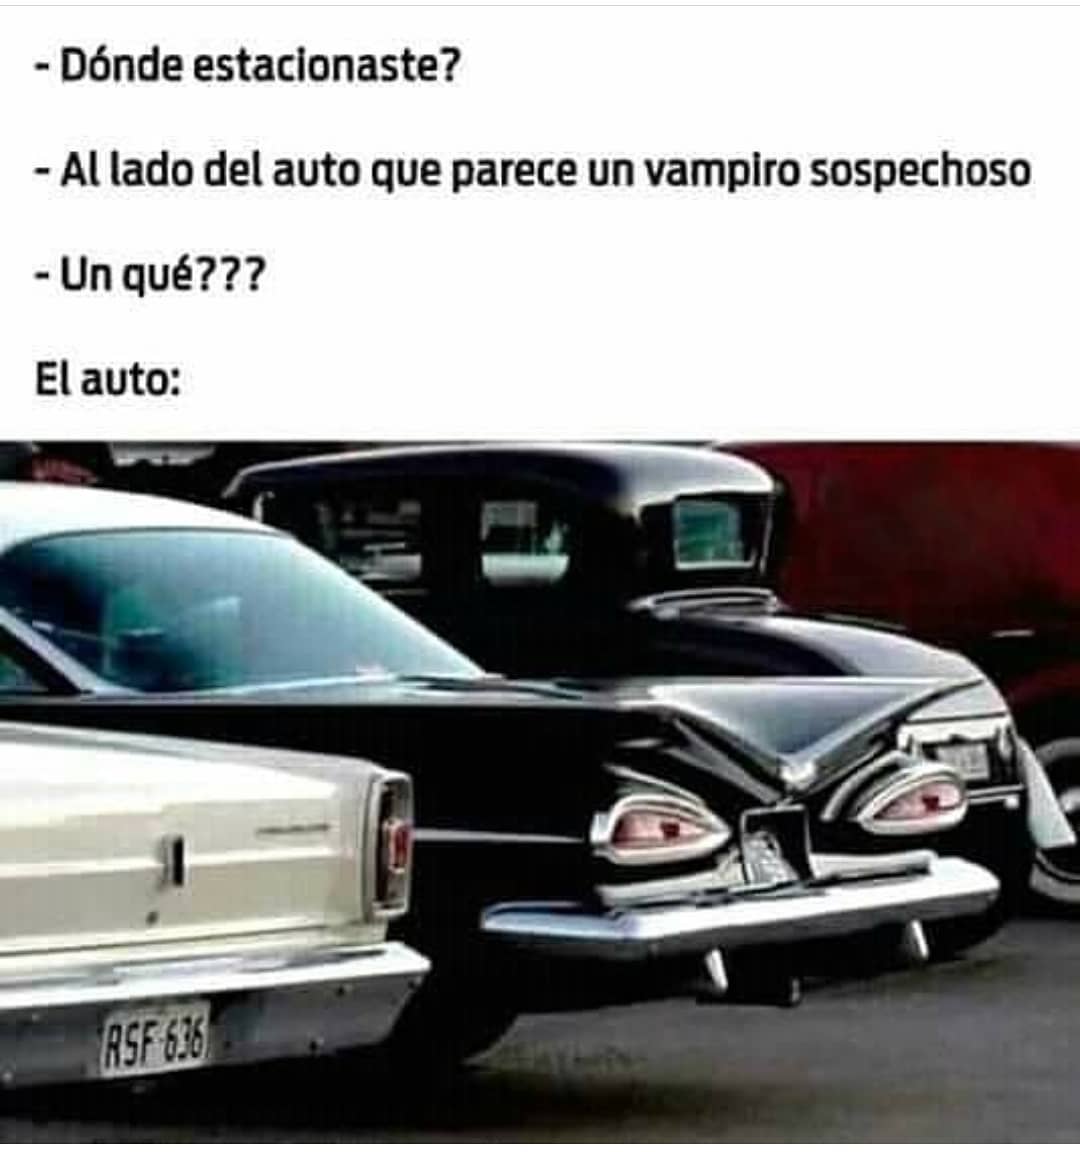 Dónde estacionaste?  Al lado del auto que parece un vampiro sospechoso.  Un qué???  El auto: